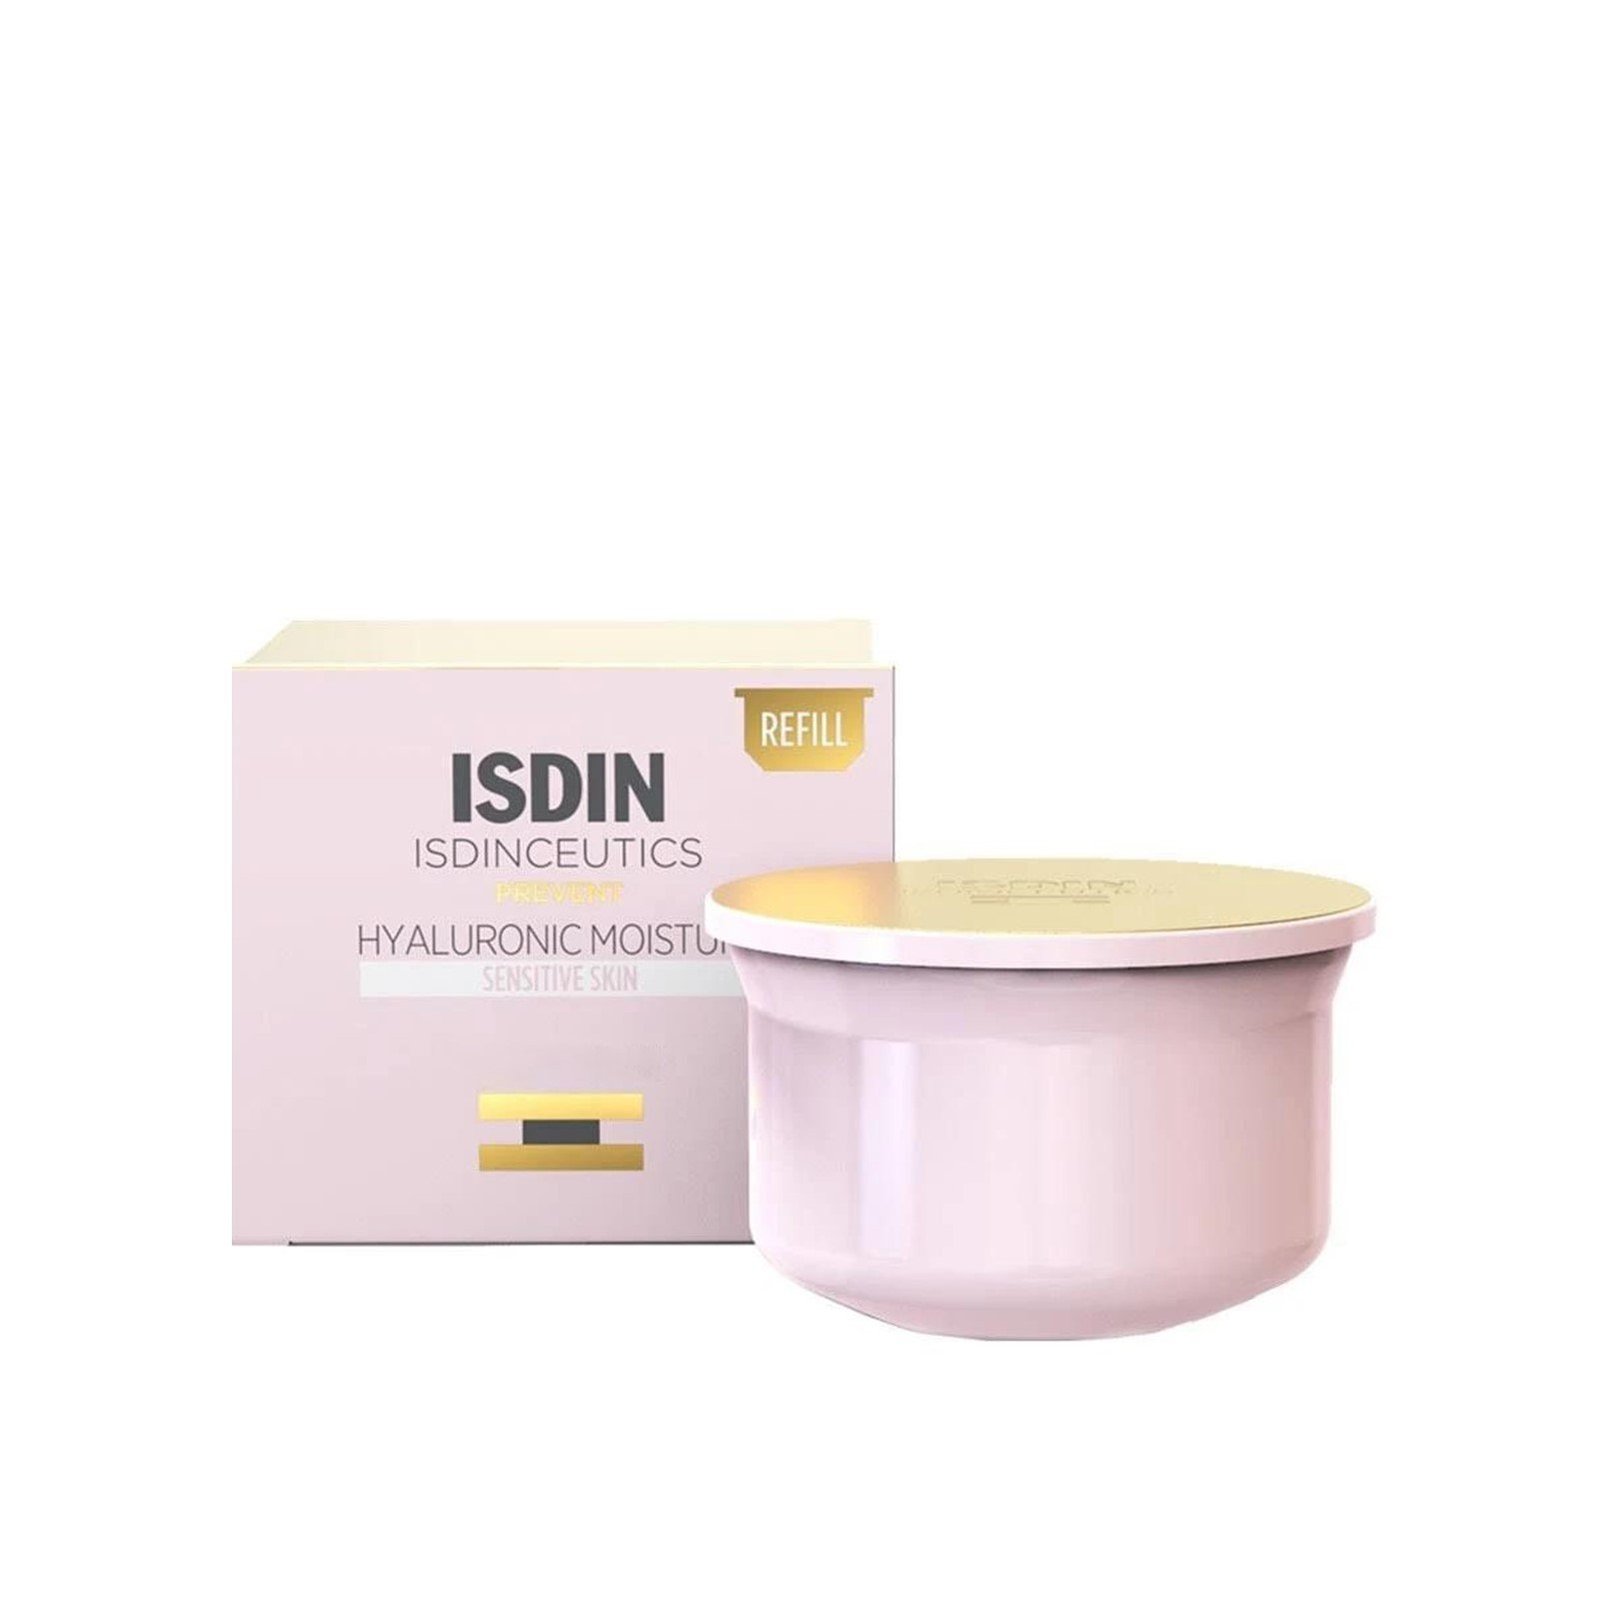 ISDINCEUTICS Hyaluronic Moisture Cream Sensitive Skin Refill 50g